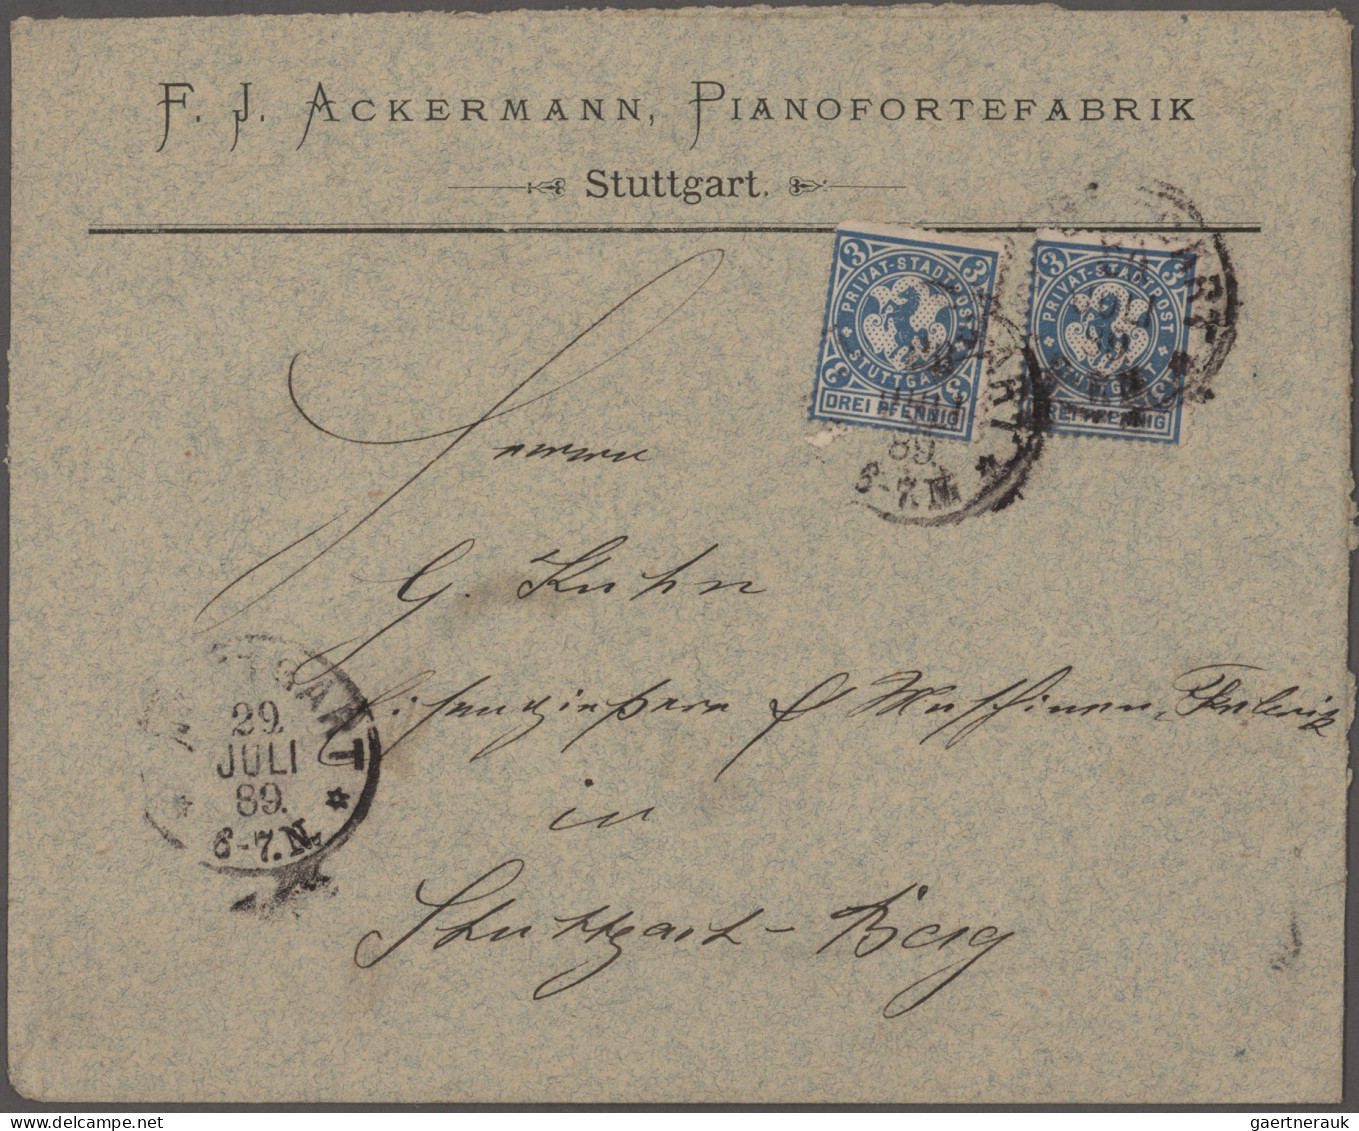 Deutsches Reich - Privatpost (Stadtpost): 1886/1898, STUTTGART, saubere umfangre